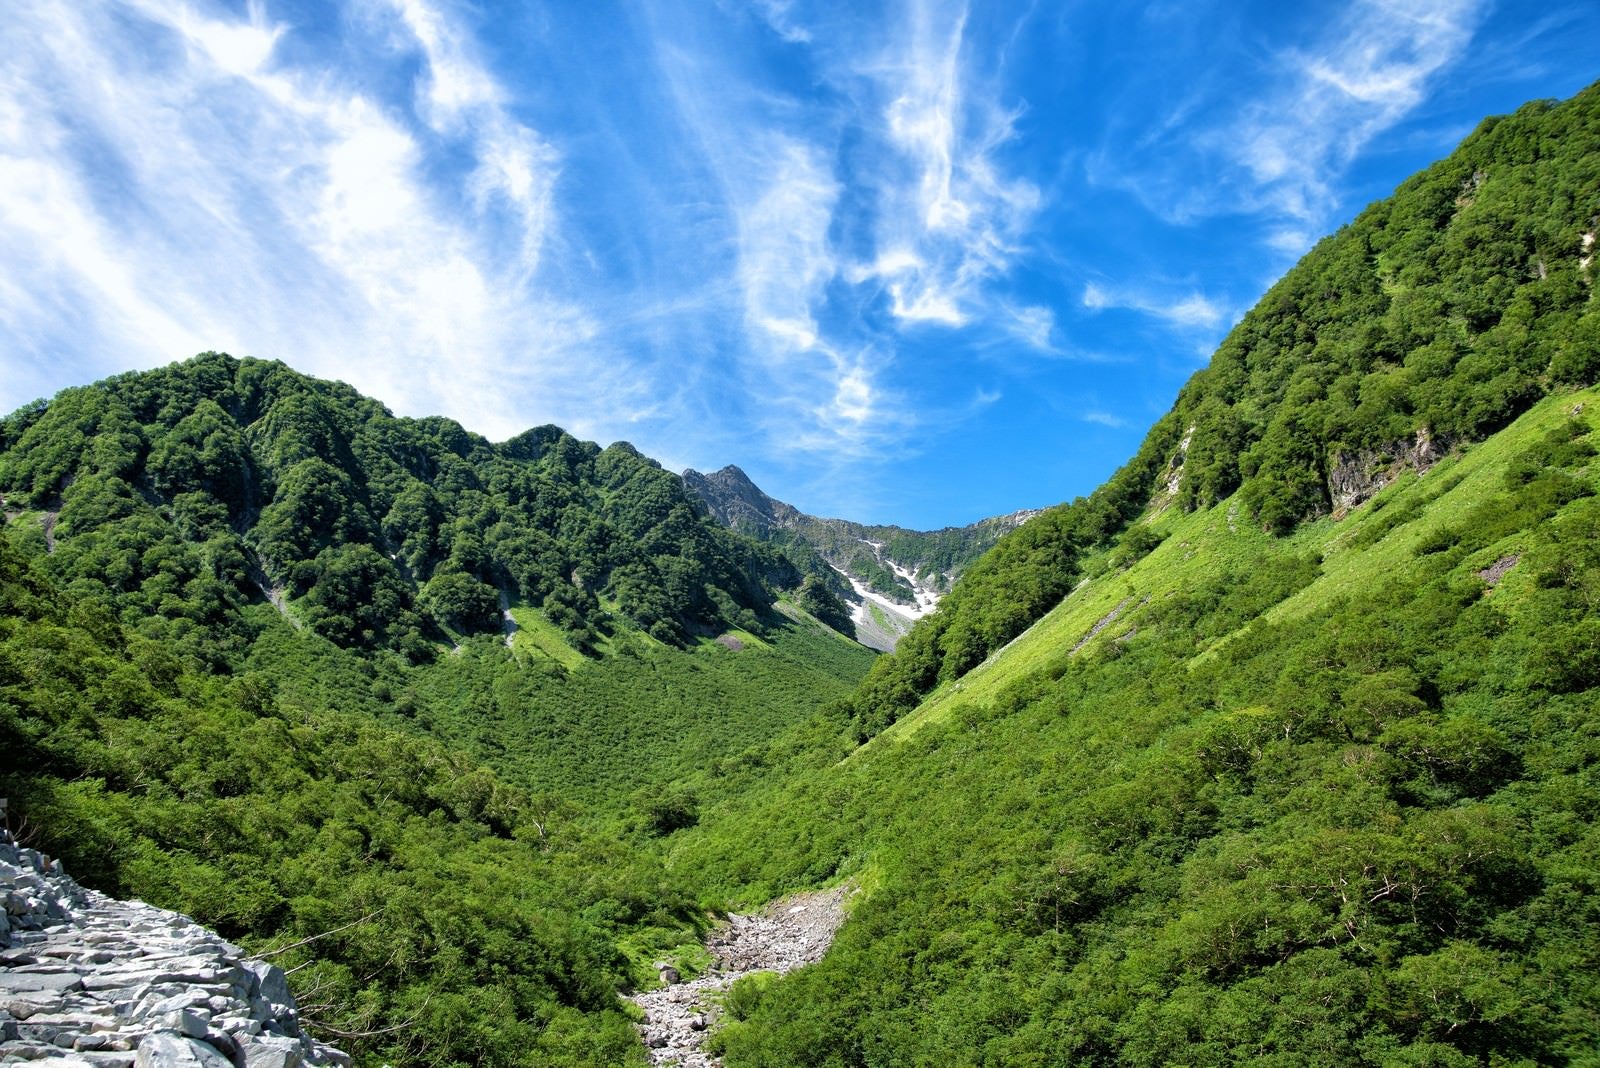 「新緑溢れる山間からかすかに見える涸沢カール」の写真